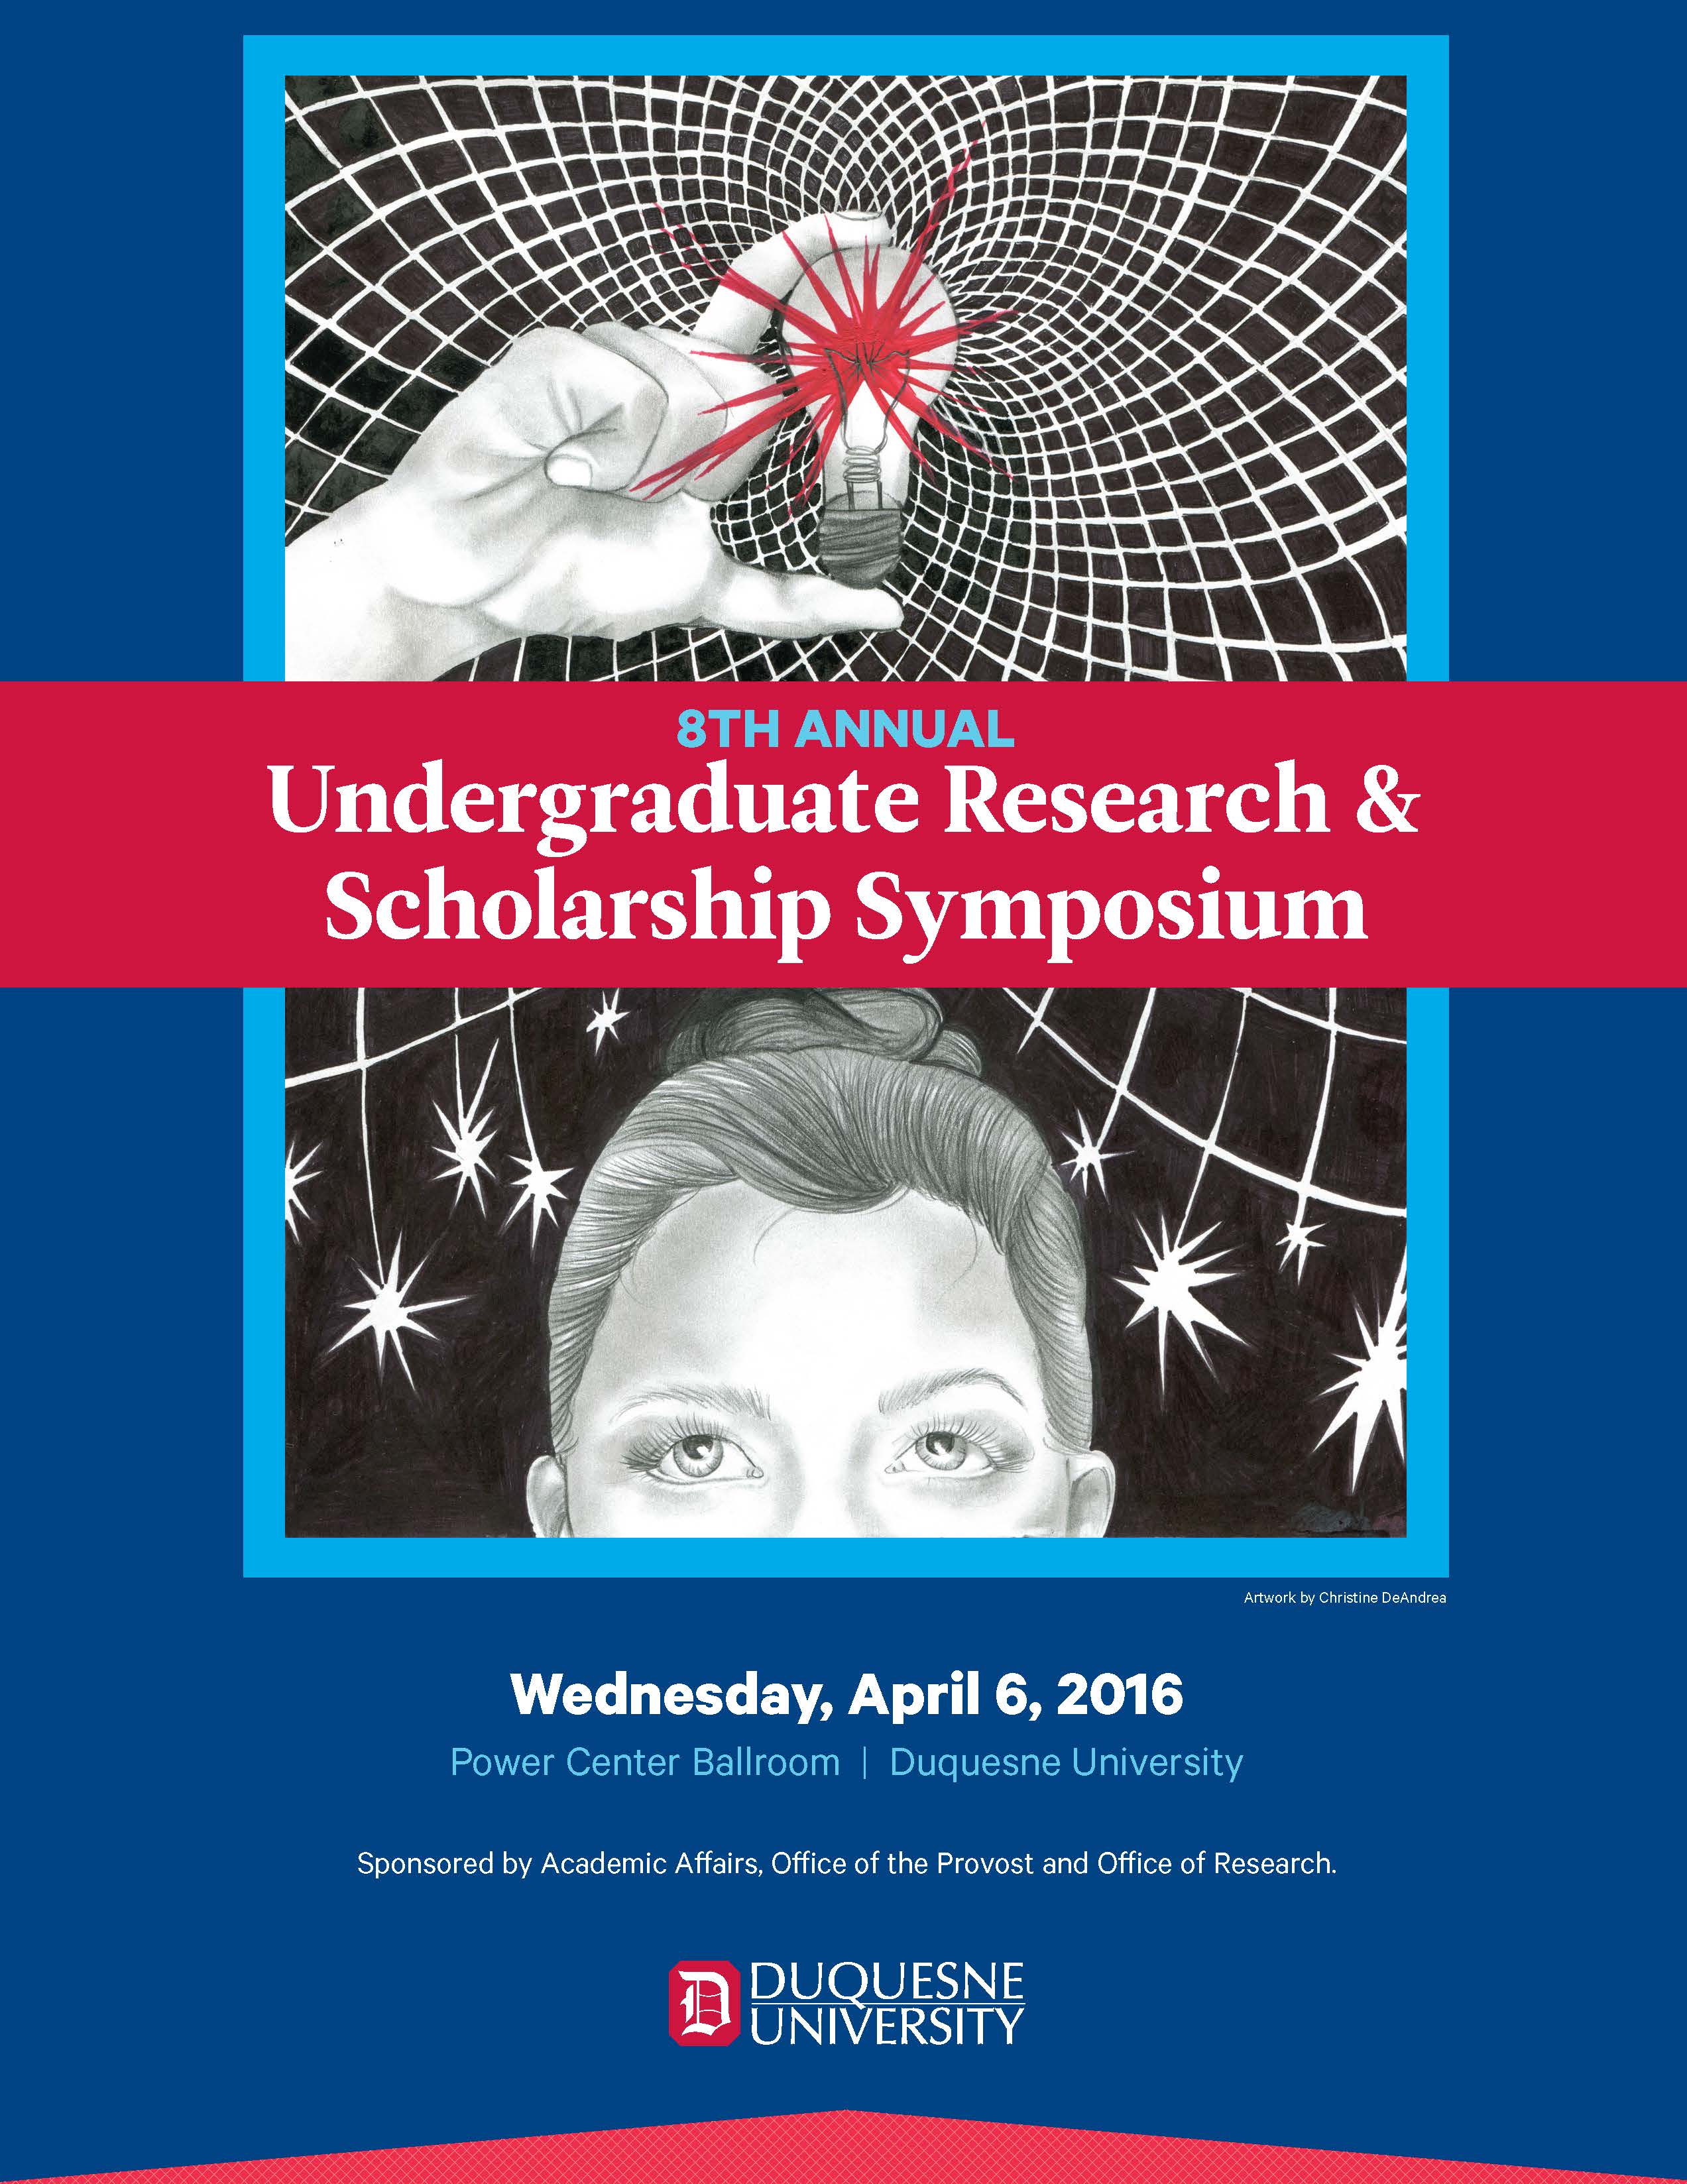 8th Annual Undergraduate Research & Scholarship Symposium